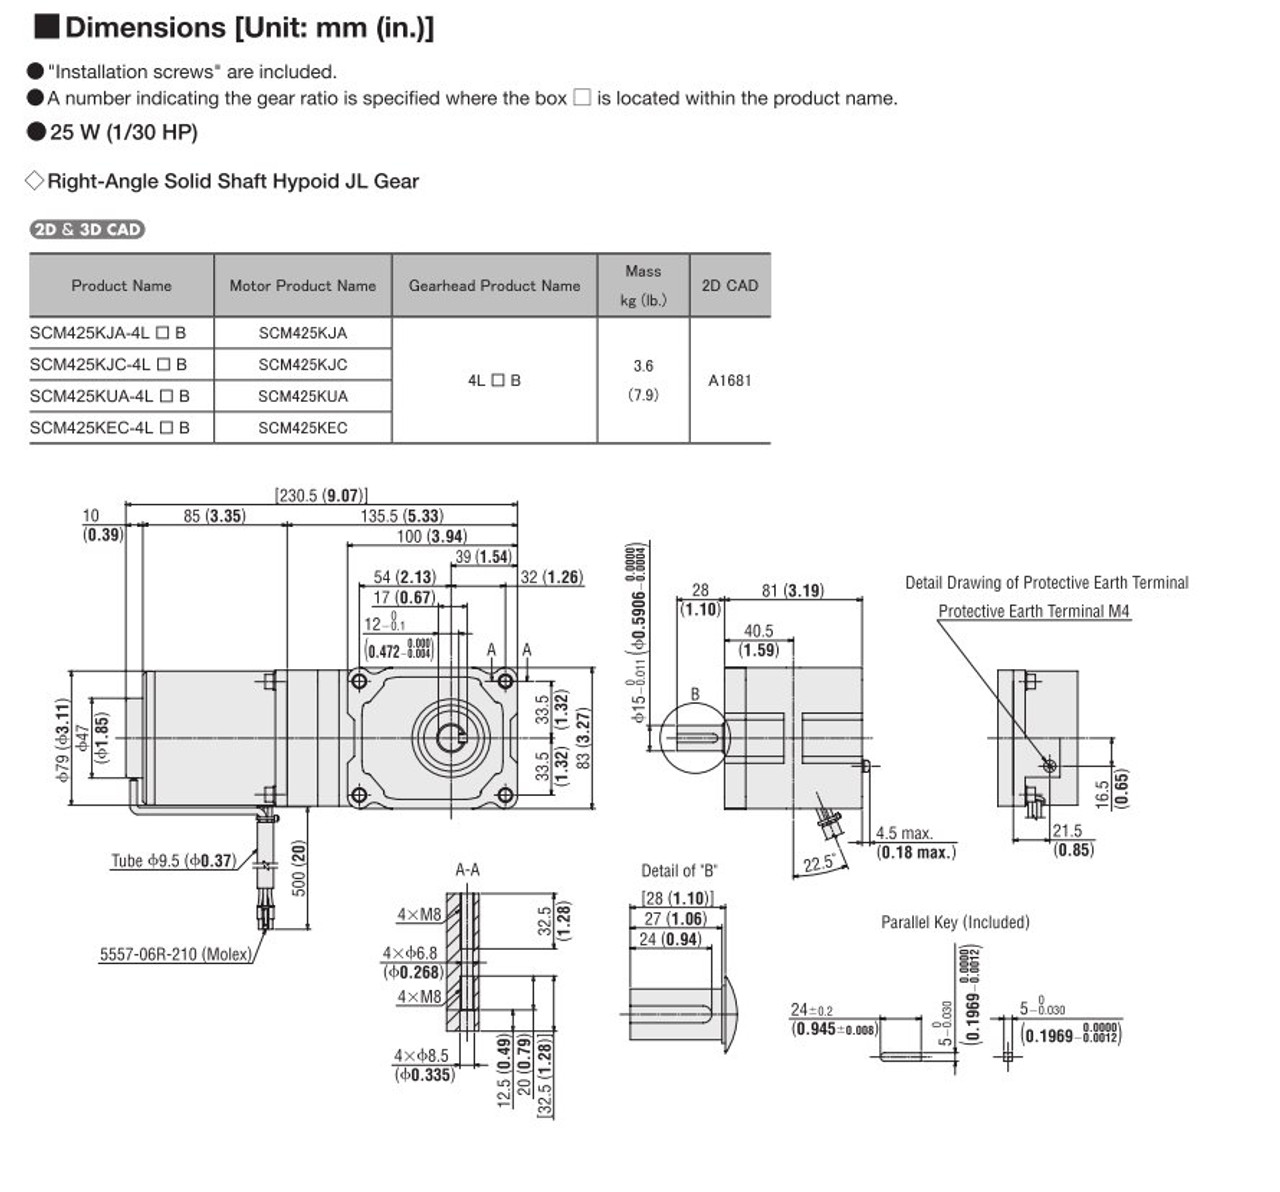 SCM425KEC-4L15B - Dimensions